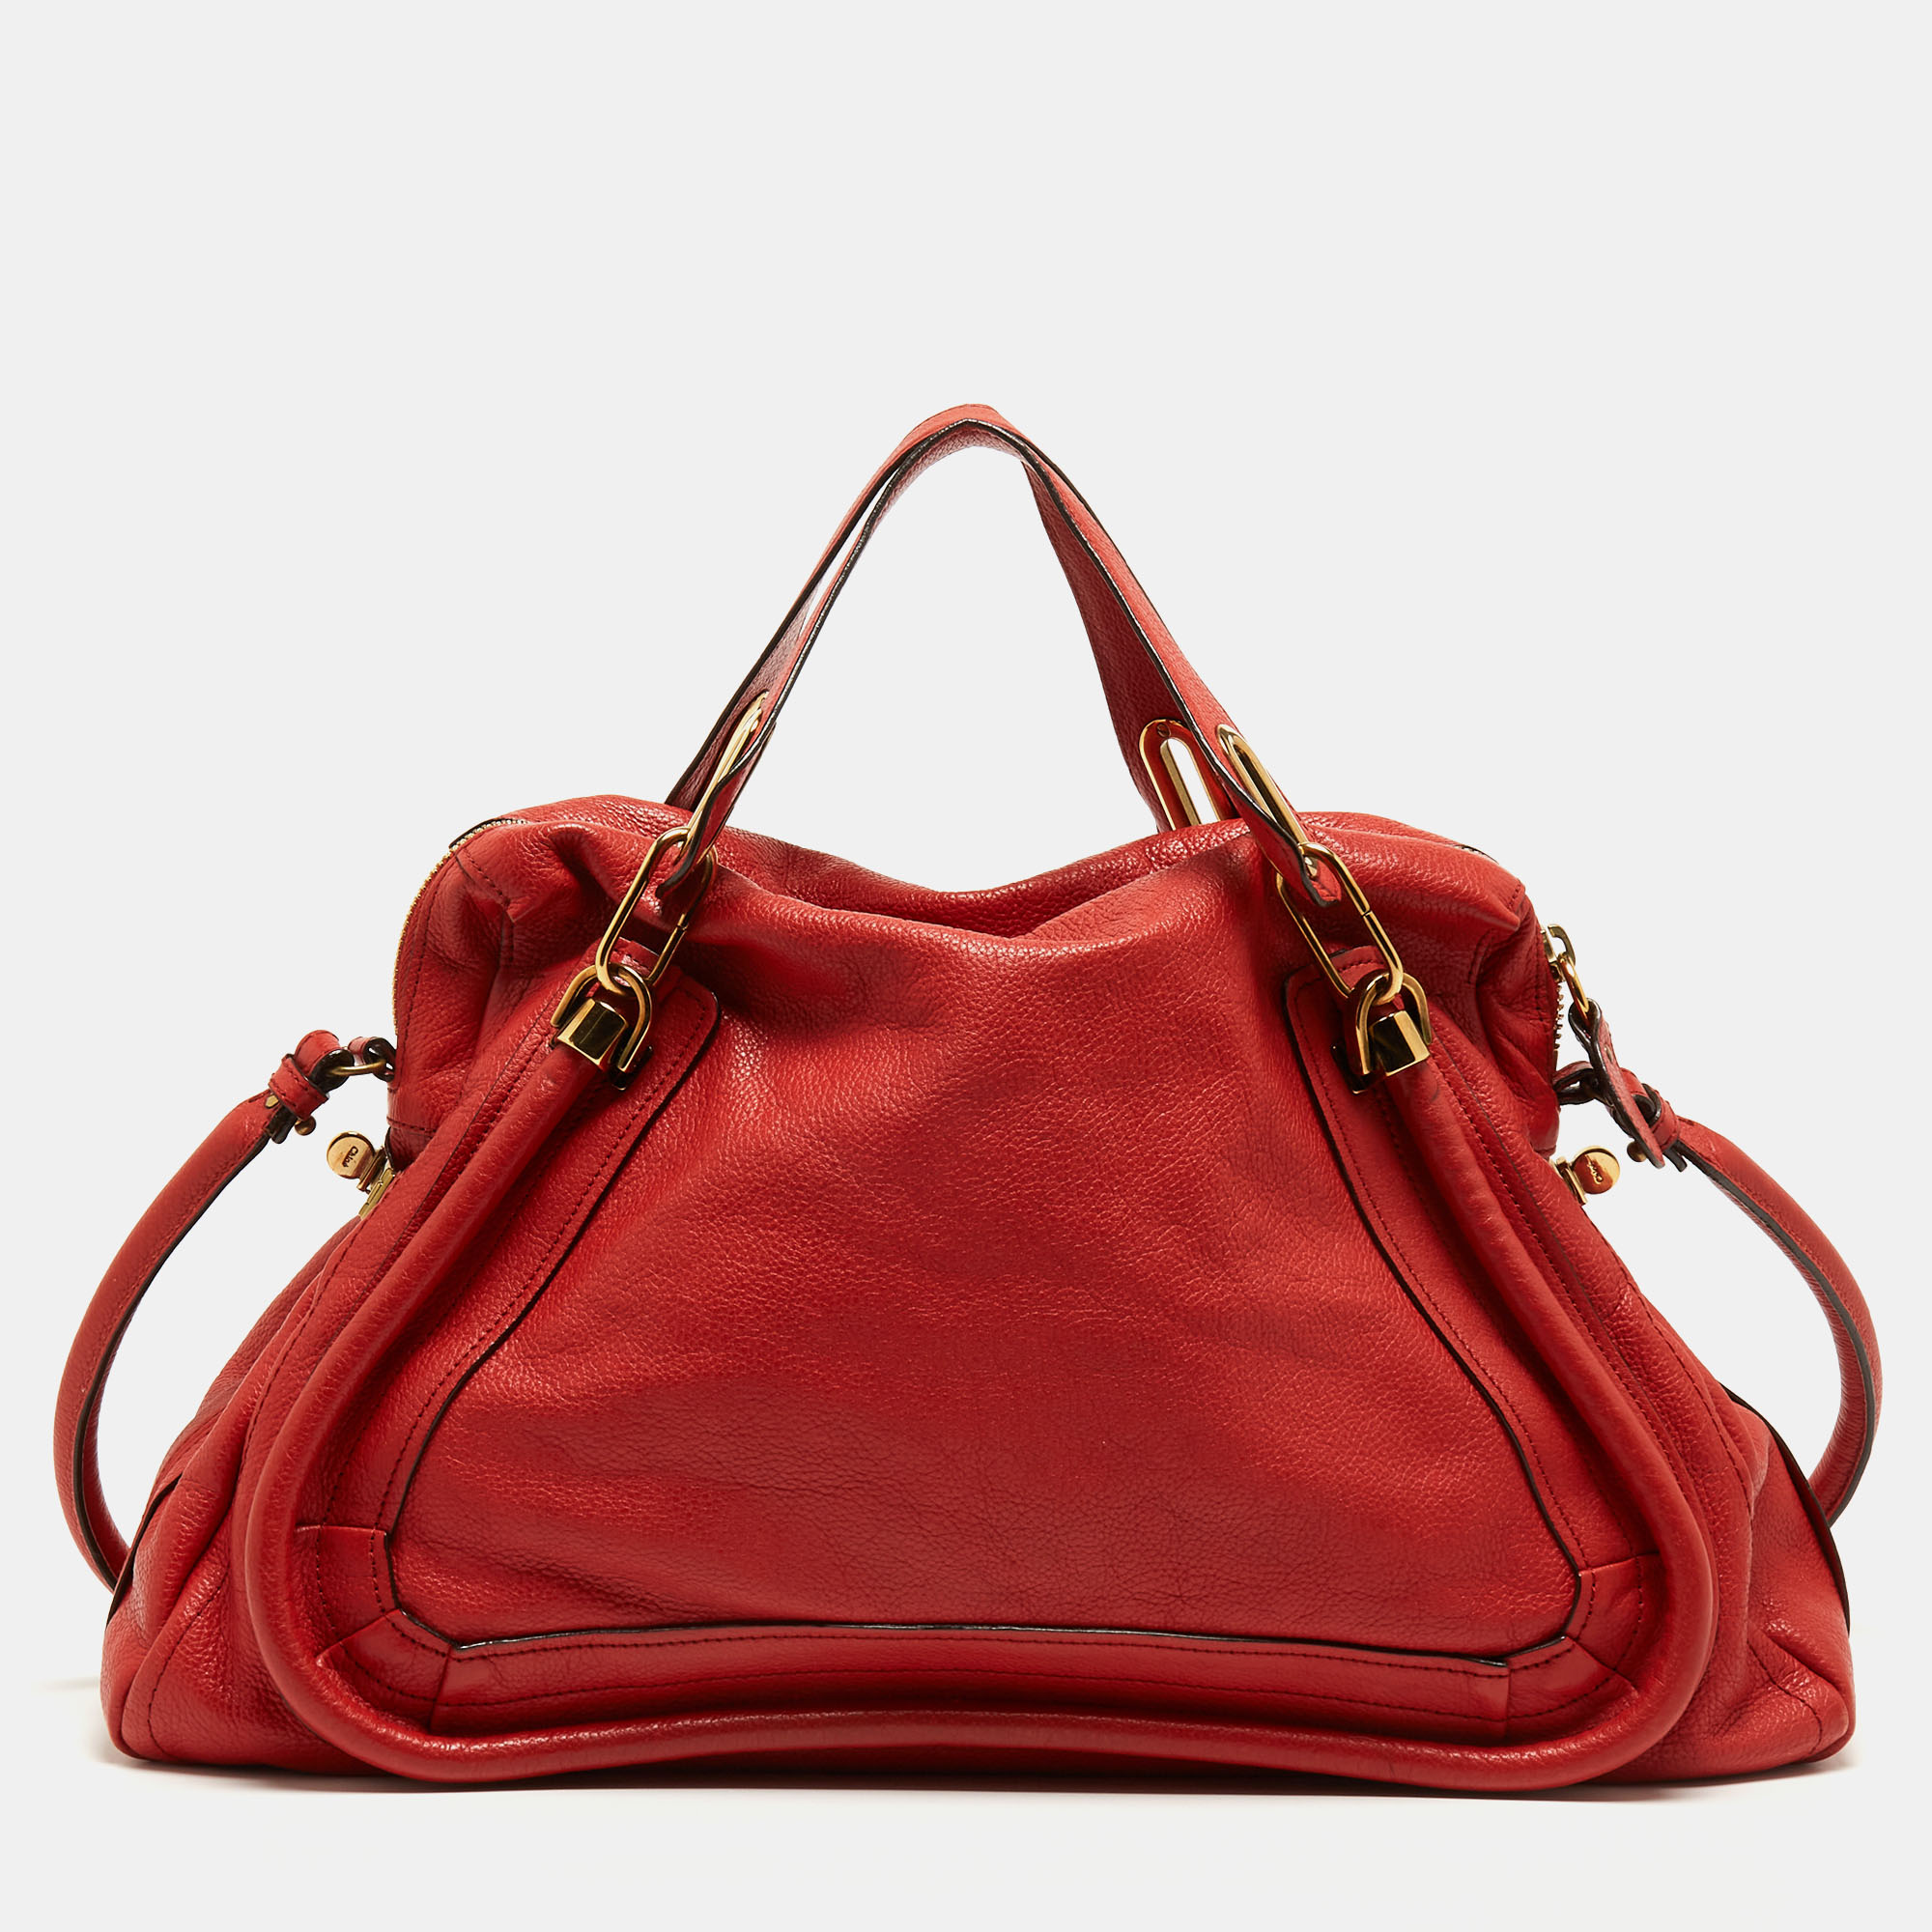 Chloe Brick Red Leather Large Paraty Shoulder Bag